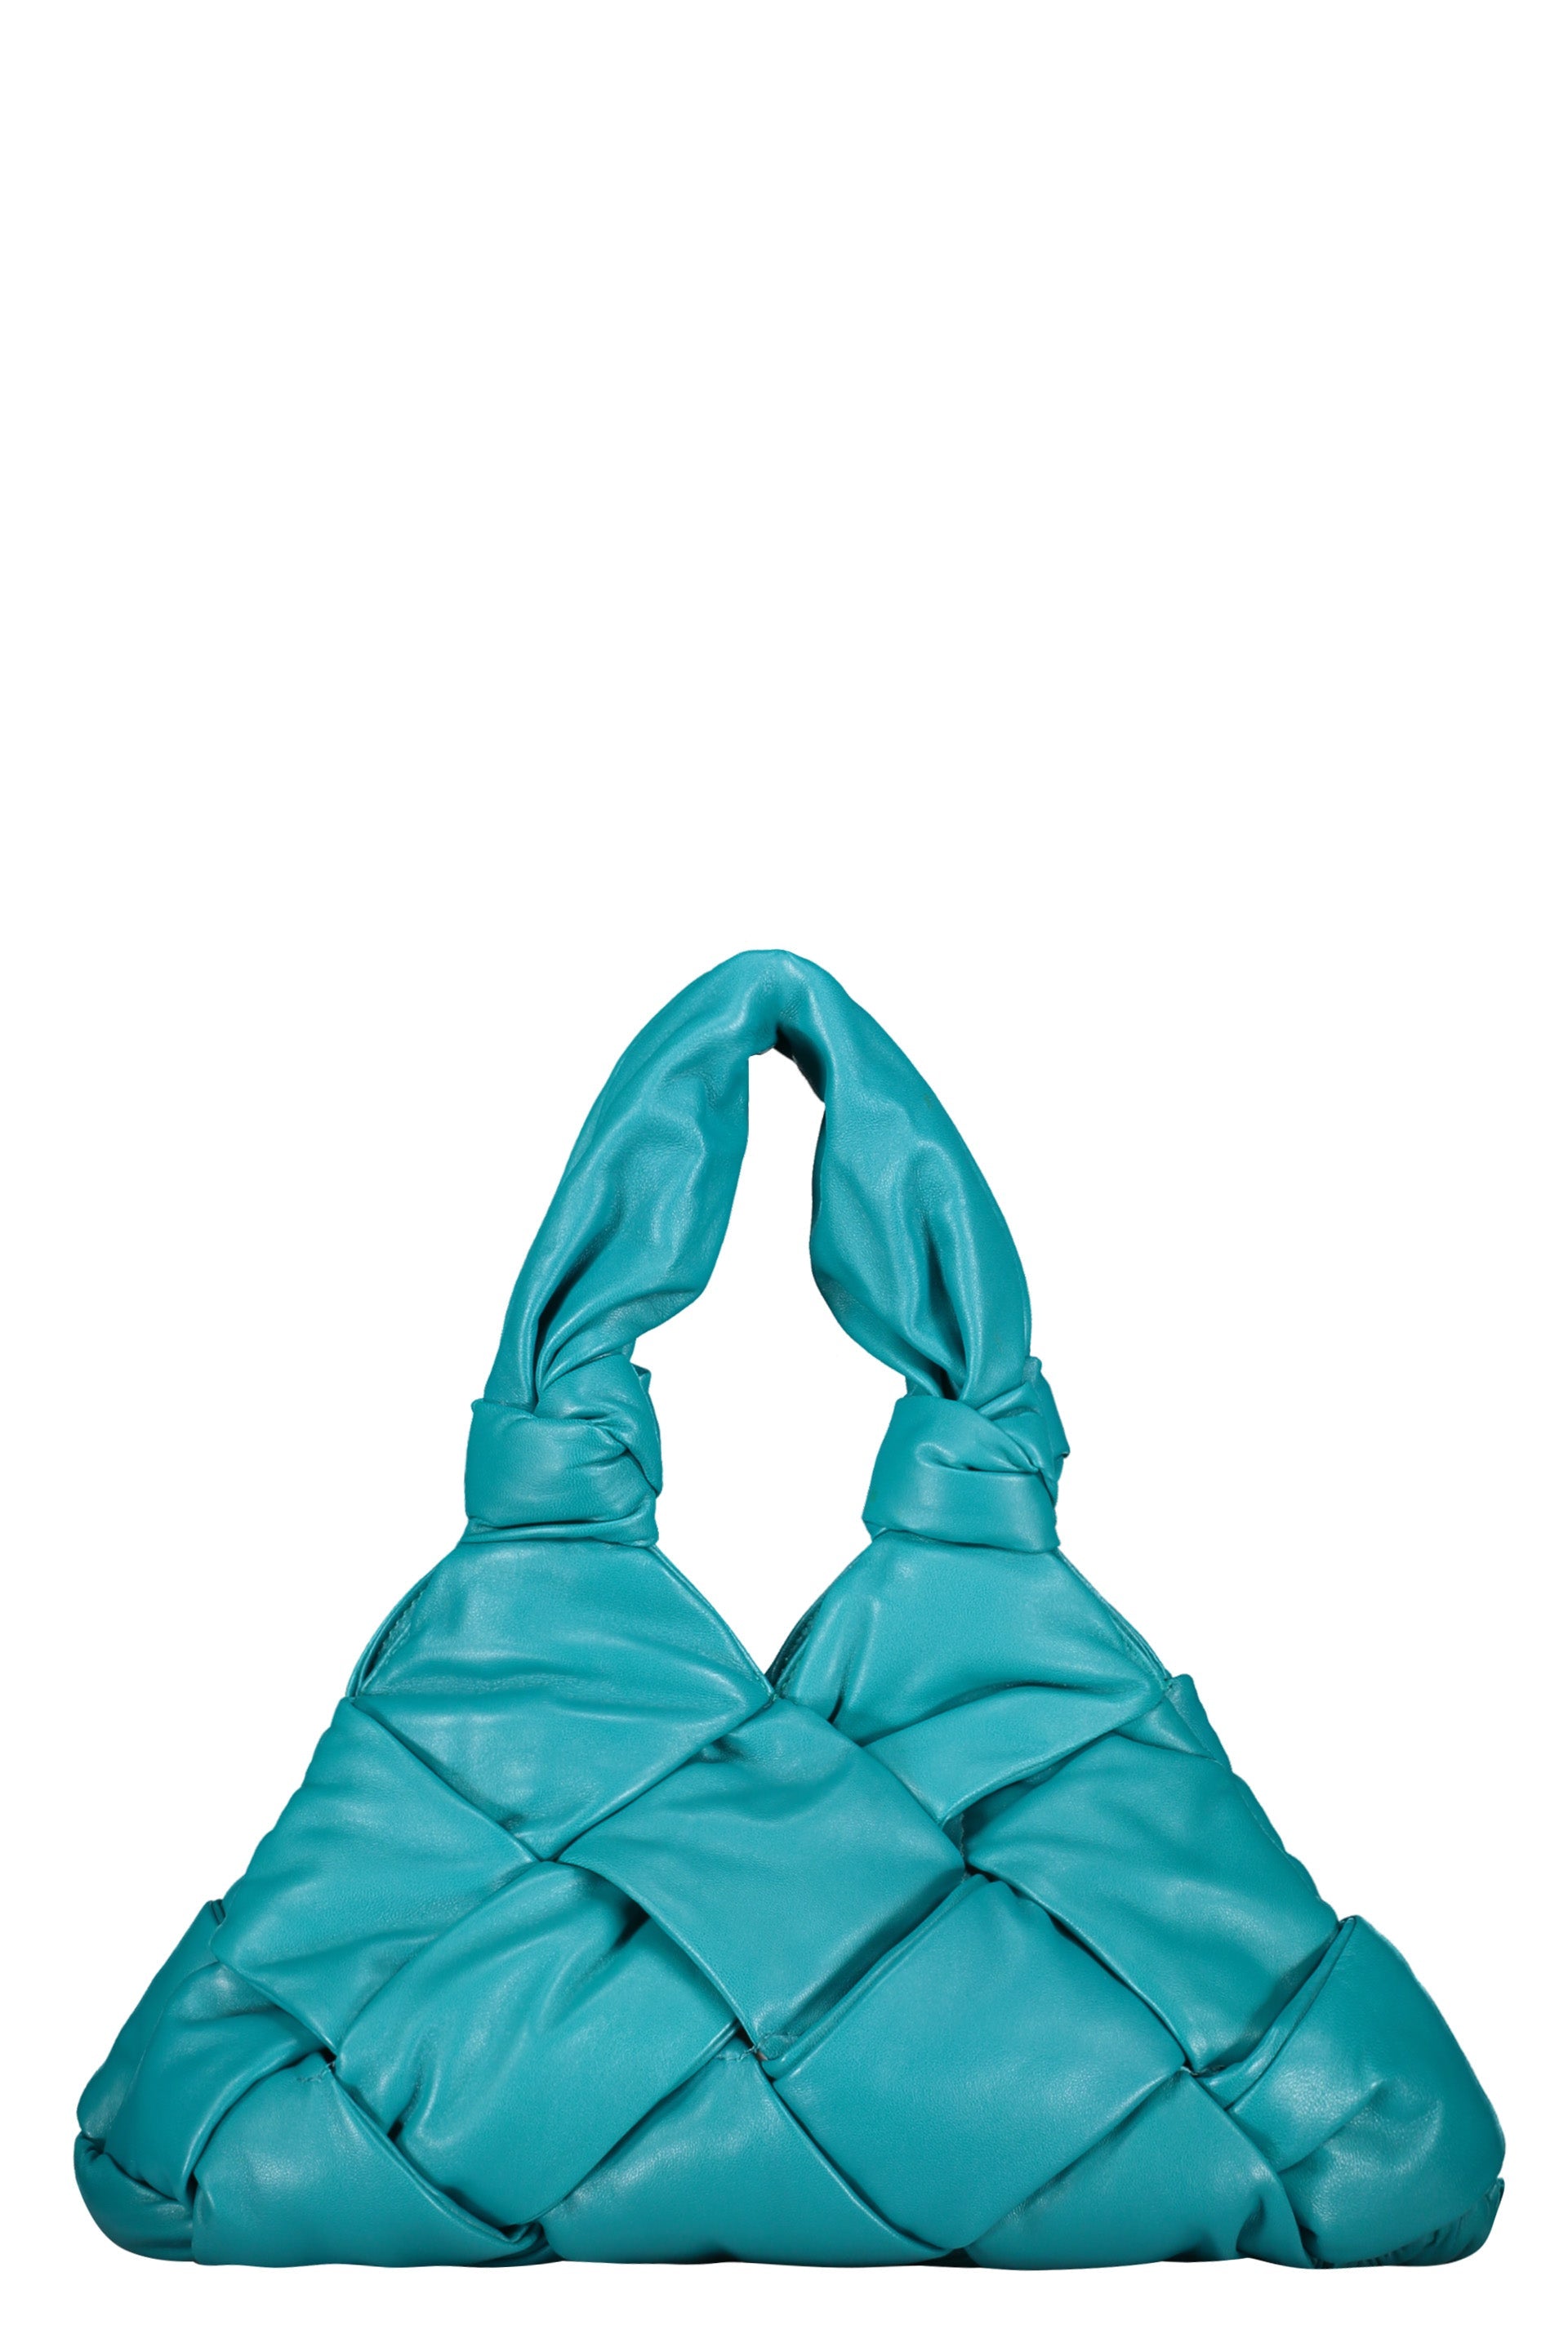 Padded Lock leather shoulder bag-Bottega Veneta-OUTLET-SALE-TU-ARCHIVIST